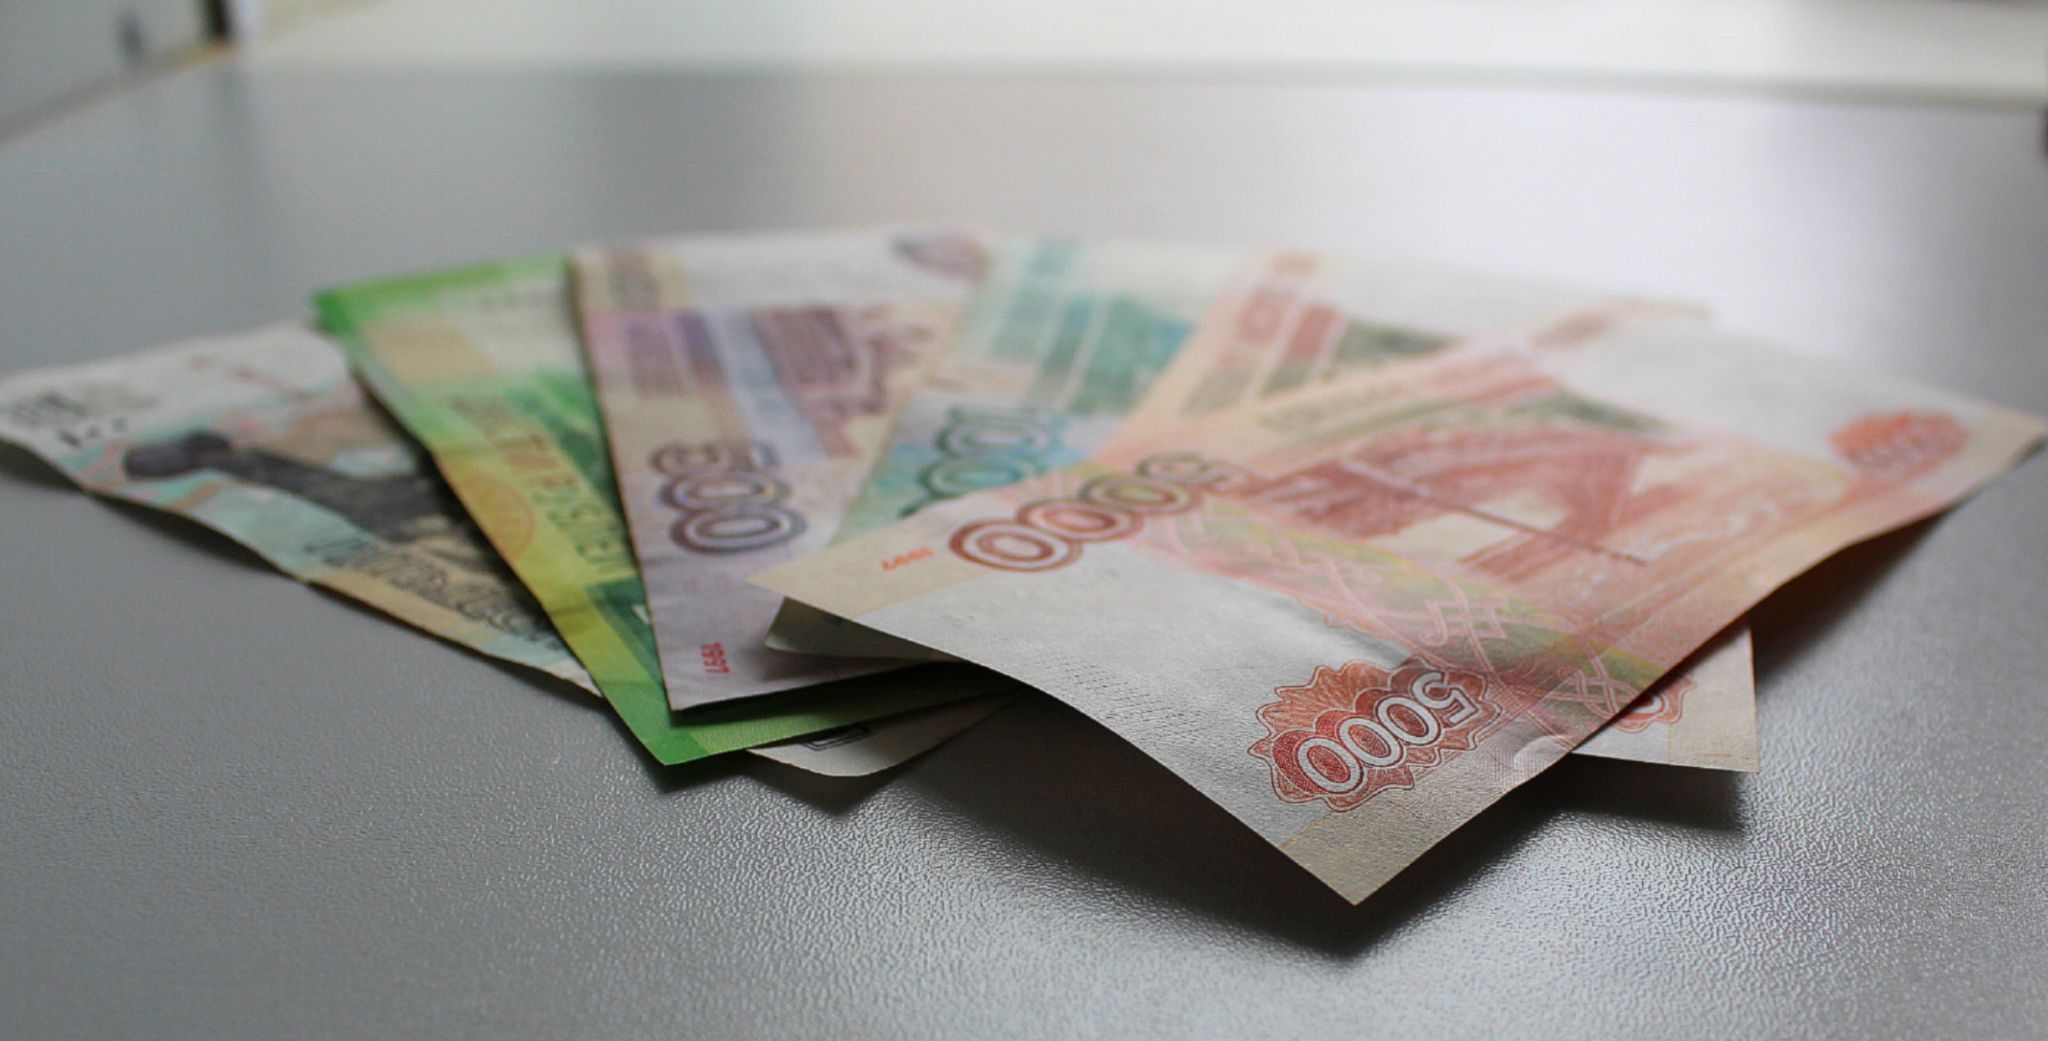 Врач из Благовещенска отдал мошенникам 10 миллионов рублей